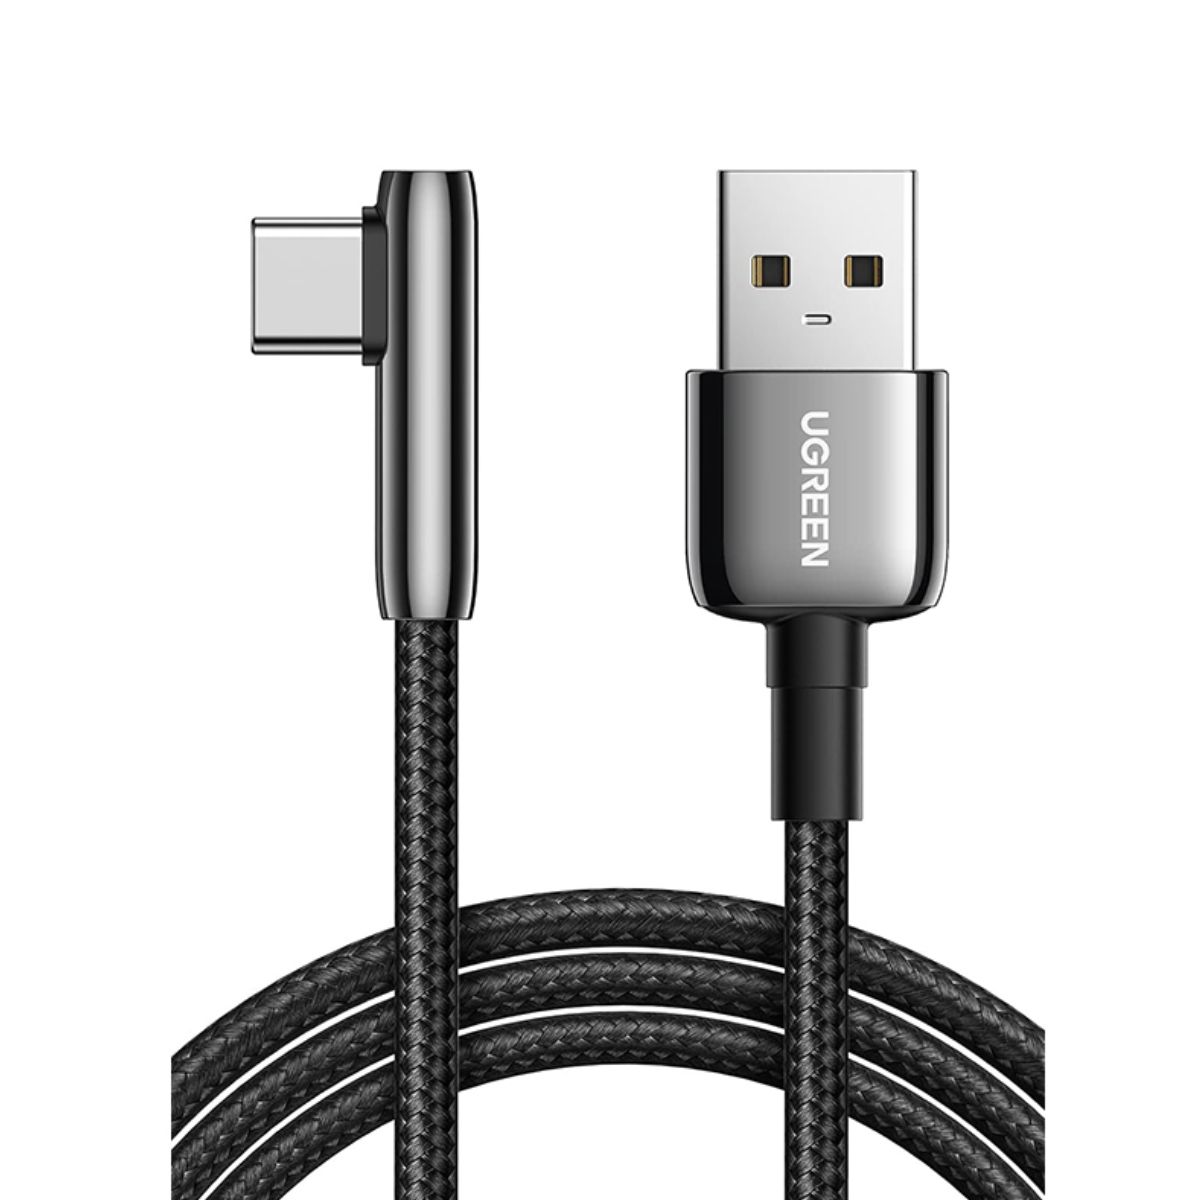 Cáp sạc nhanh USB Type-C bẻ góc Ugreen US313, 70413 chiều dài 1m, vỏ hợp kim kẽm